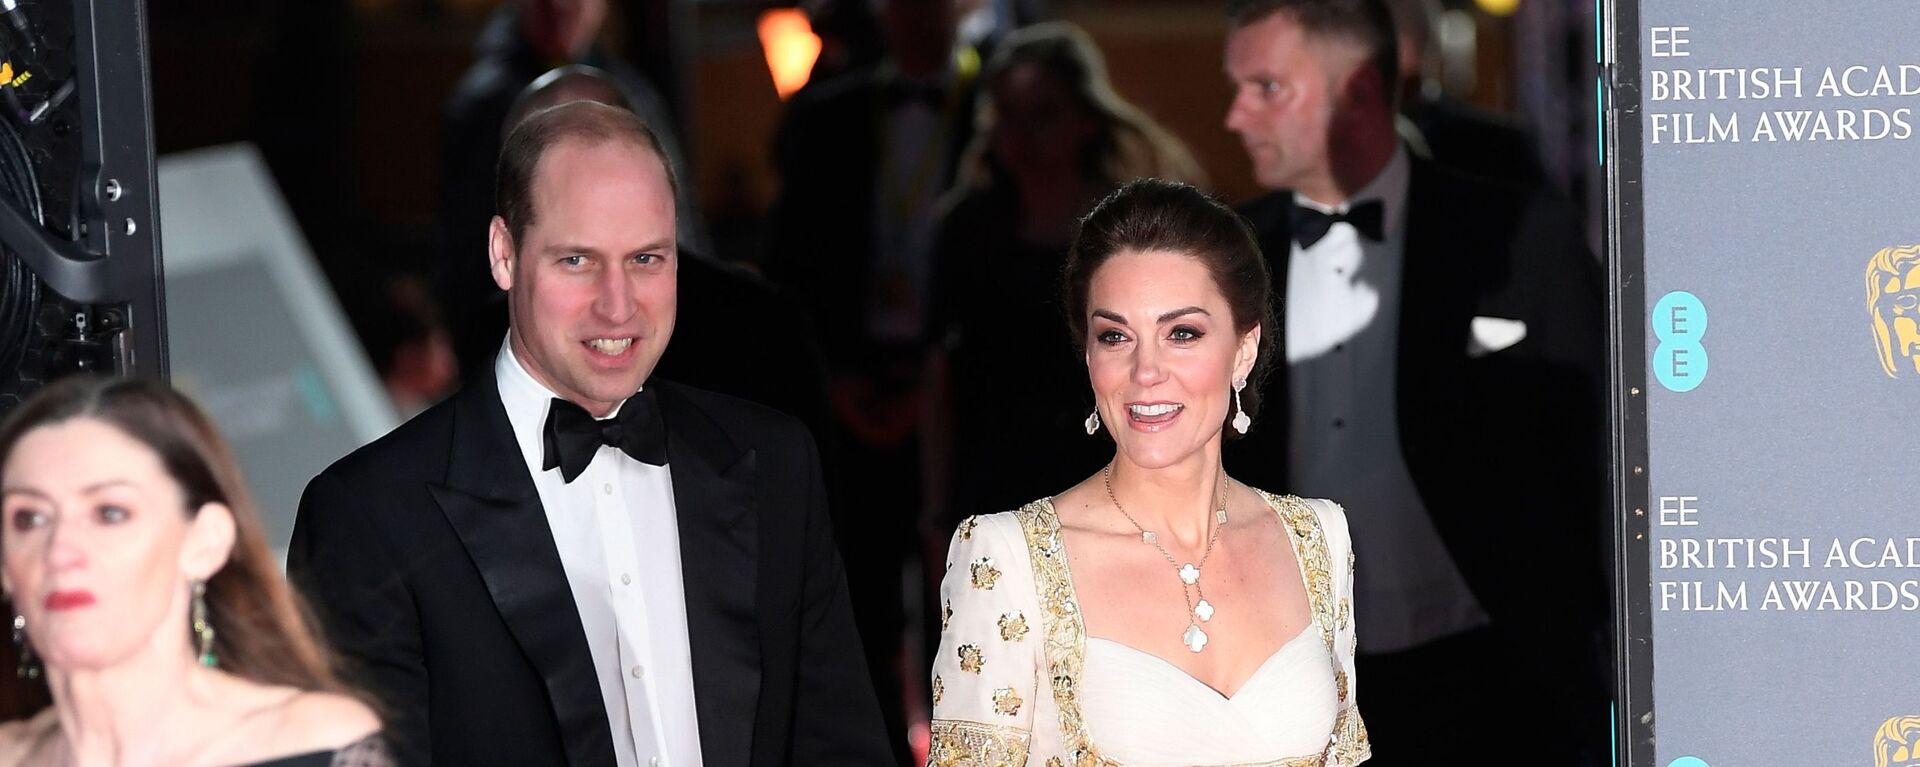 الأمير البريطاني وليام وزوجته كيت ميدلتون في حفل جوائز بافتا البريطانية، قاعة رويال ألبرت، العاصمة لندن، 2 فبراير/ شباط 2020 - سبوتنيك عربي, 1920, 18.03.2021